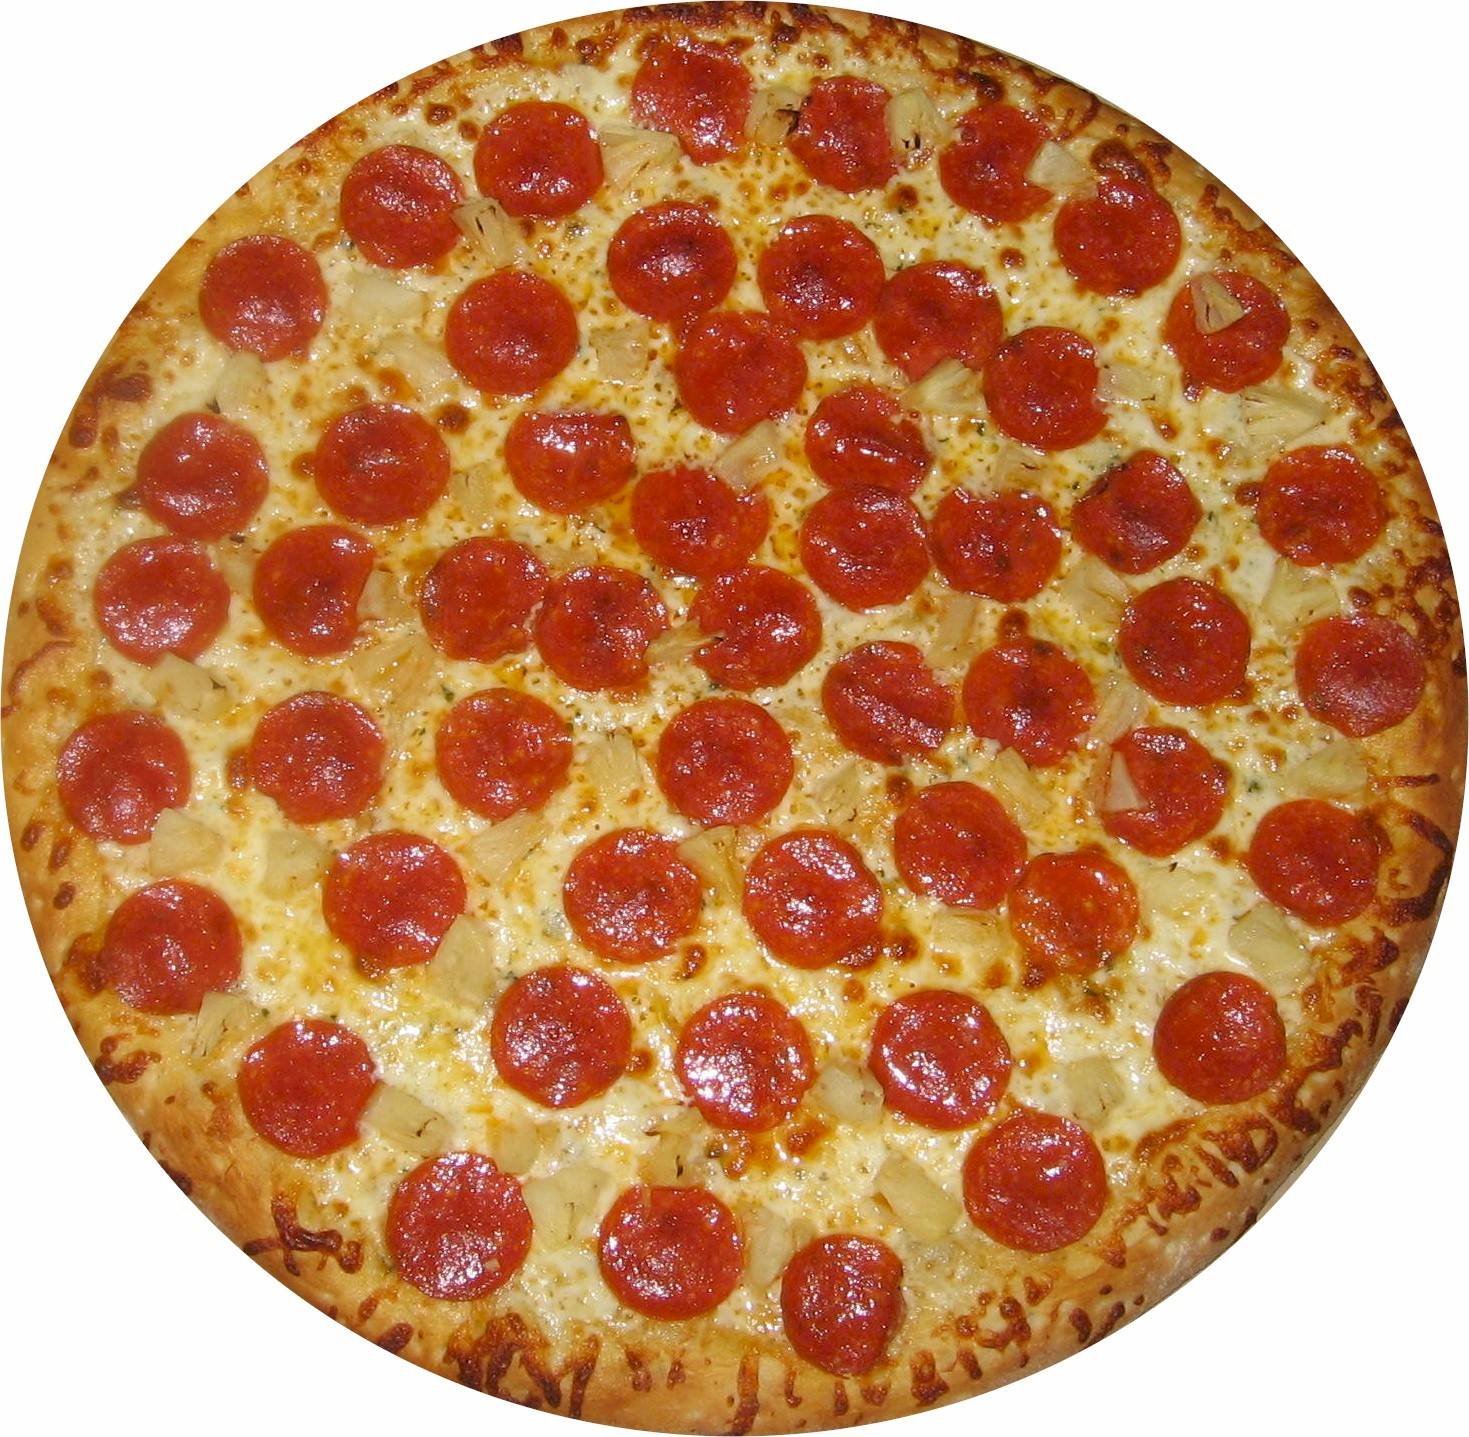 PepperoniPizza-full.jpg